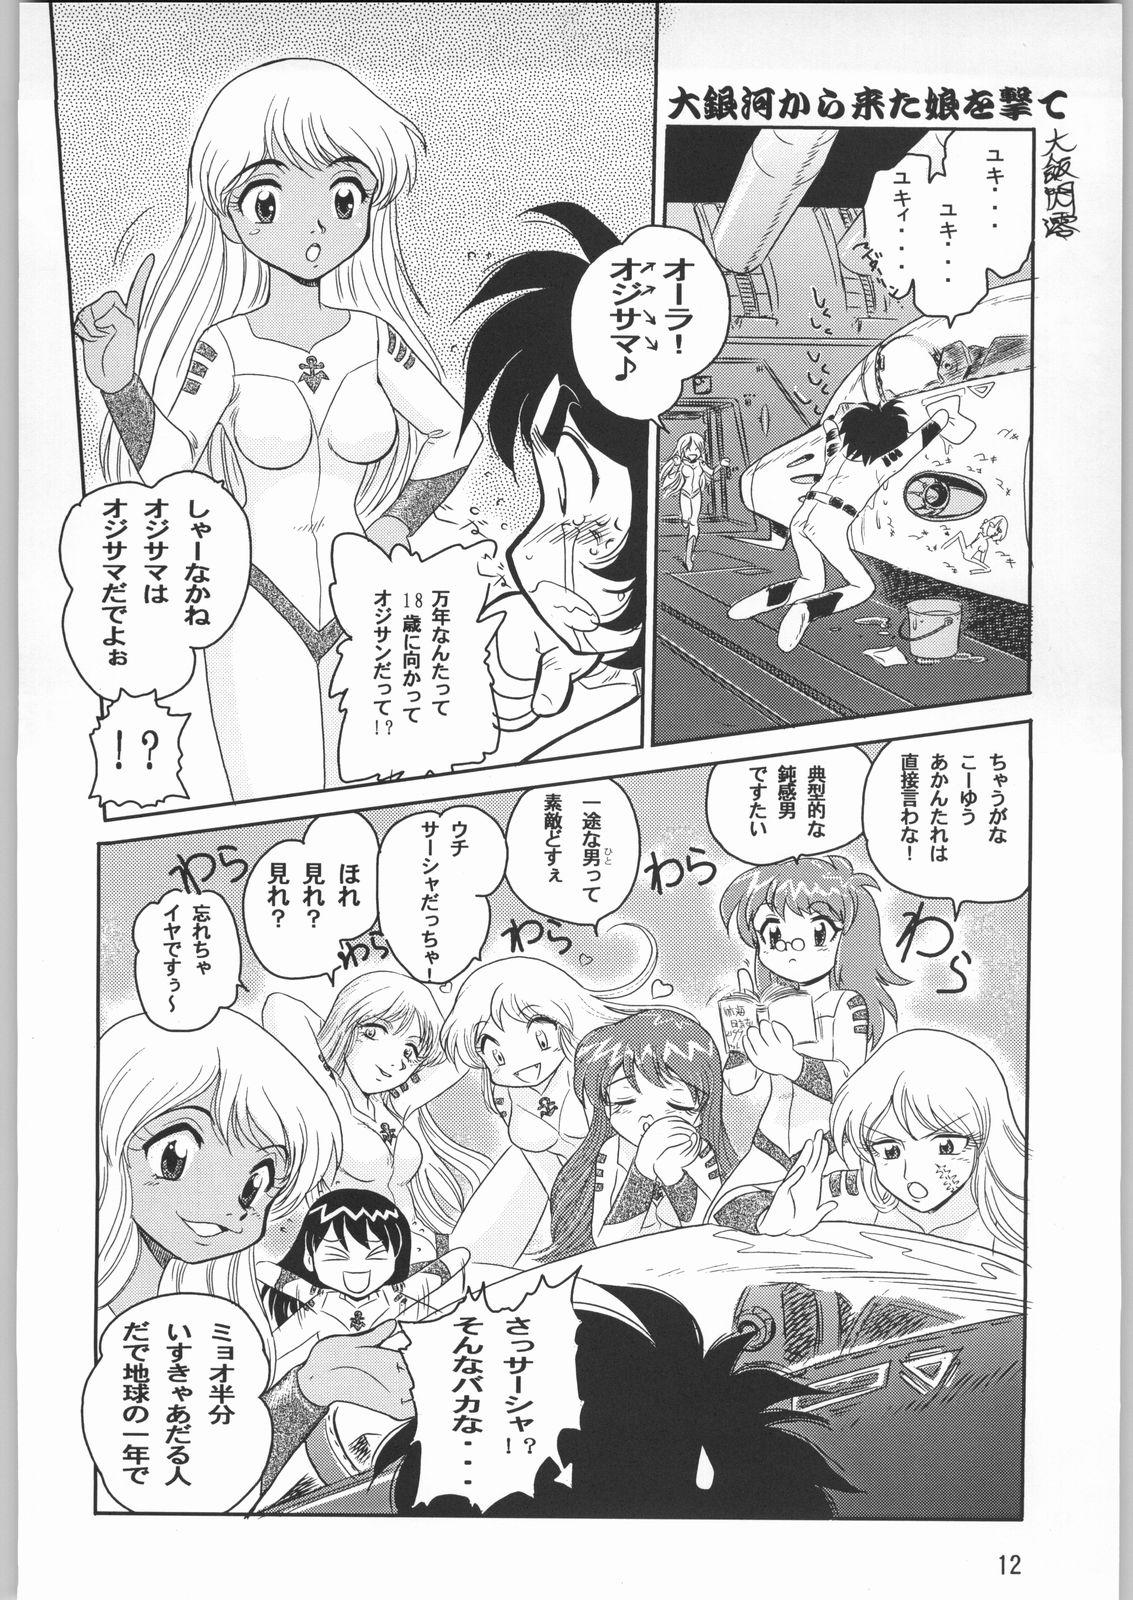 Sloppy Blow Job Megaton Punch 1 - Space battleship yamato Chobits Grandpa - Page 11